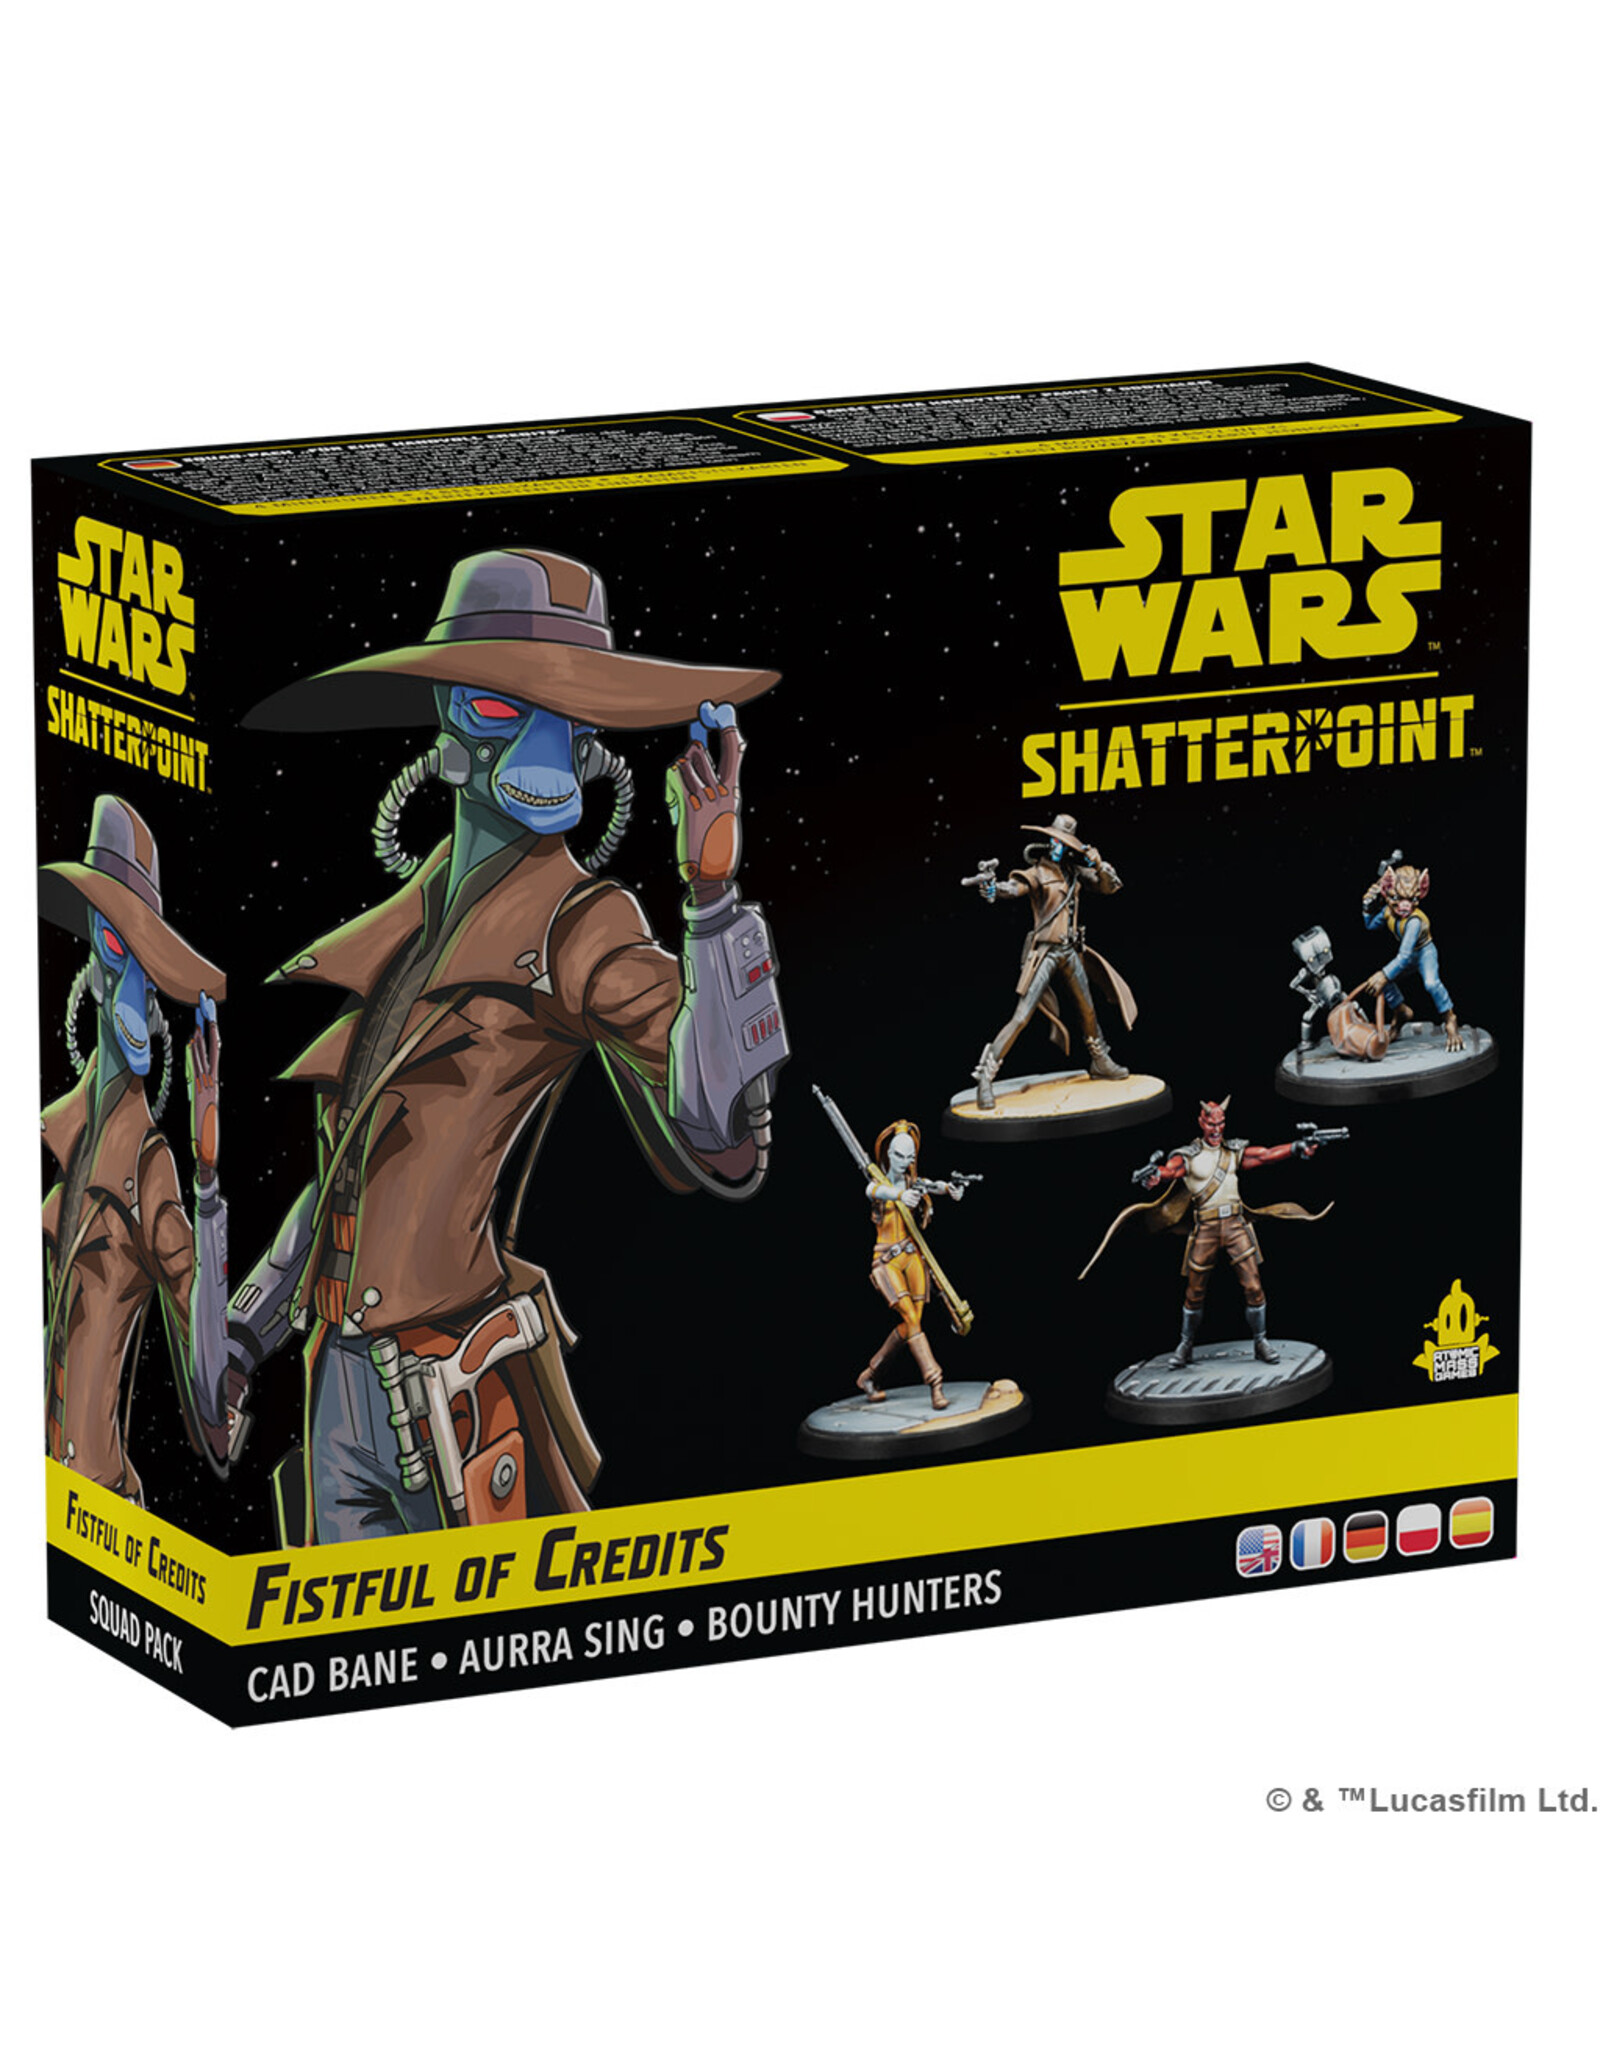 Star Wars Shatterpoint Star Wars Shatterpoint  Fistful of Credits Squad Pack